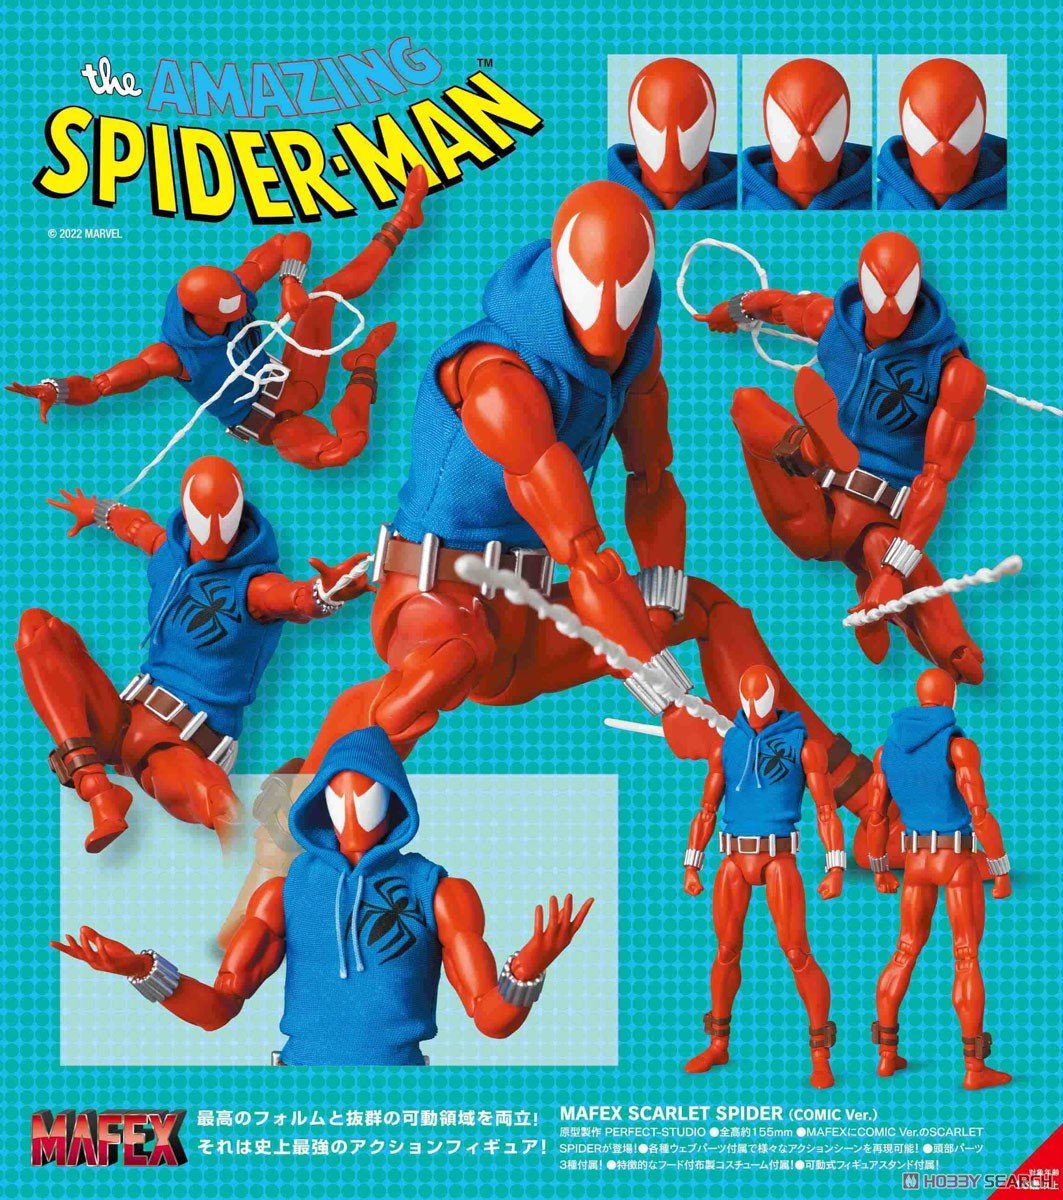 Spider-Man - Scarlet Spider (Comic) - 186 Mafex